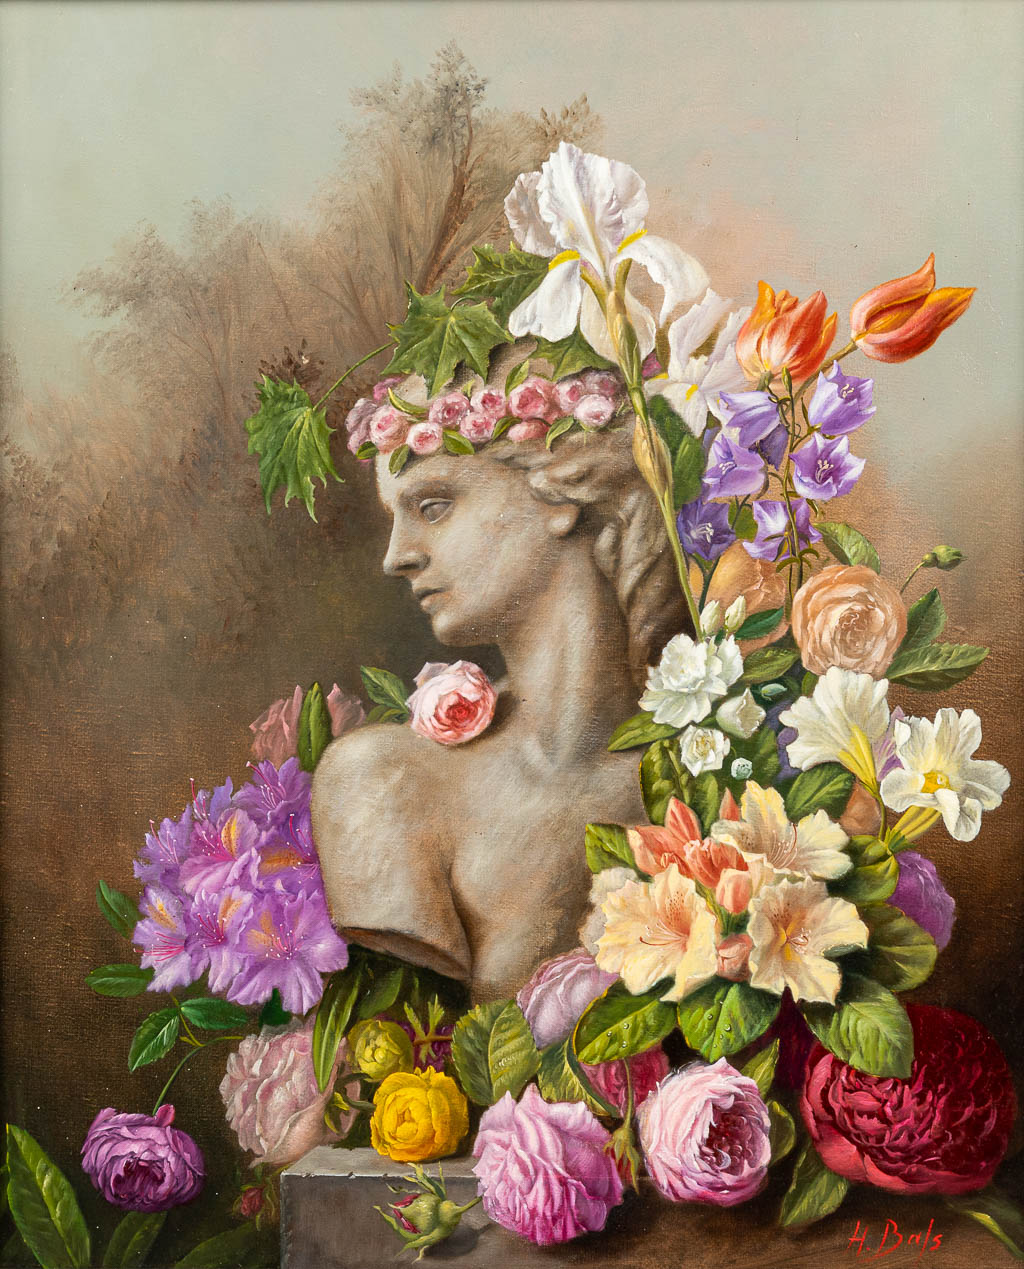 Hilaire BALS (1940) 'Bloemenboeket met buste' een stillleven, olie op doek, 1998. (50 x 60 cm)